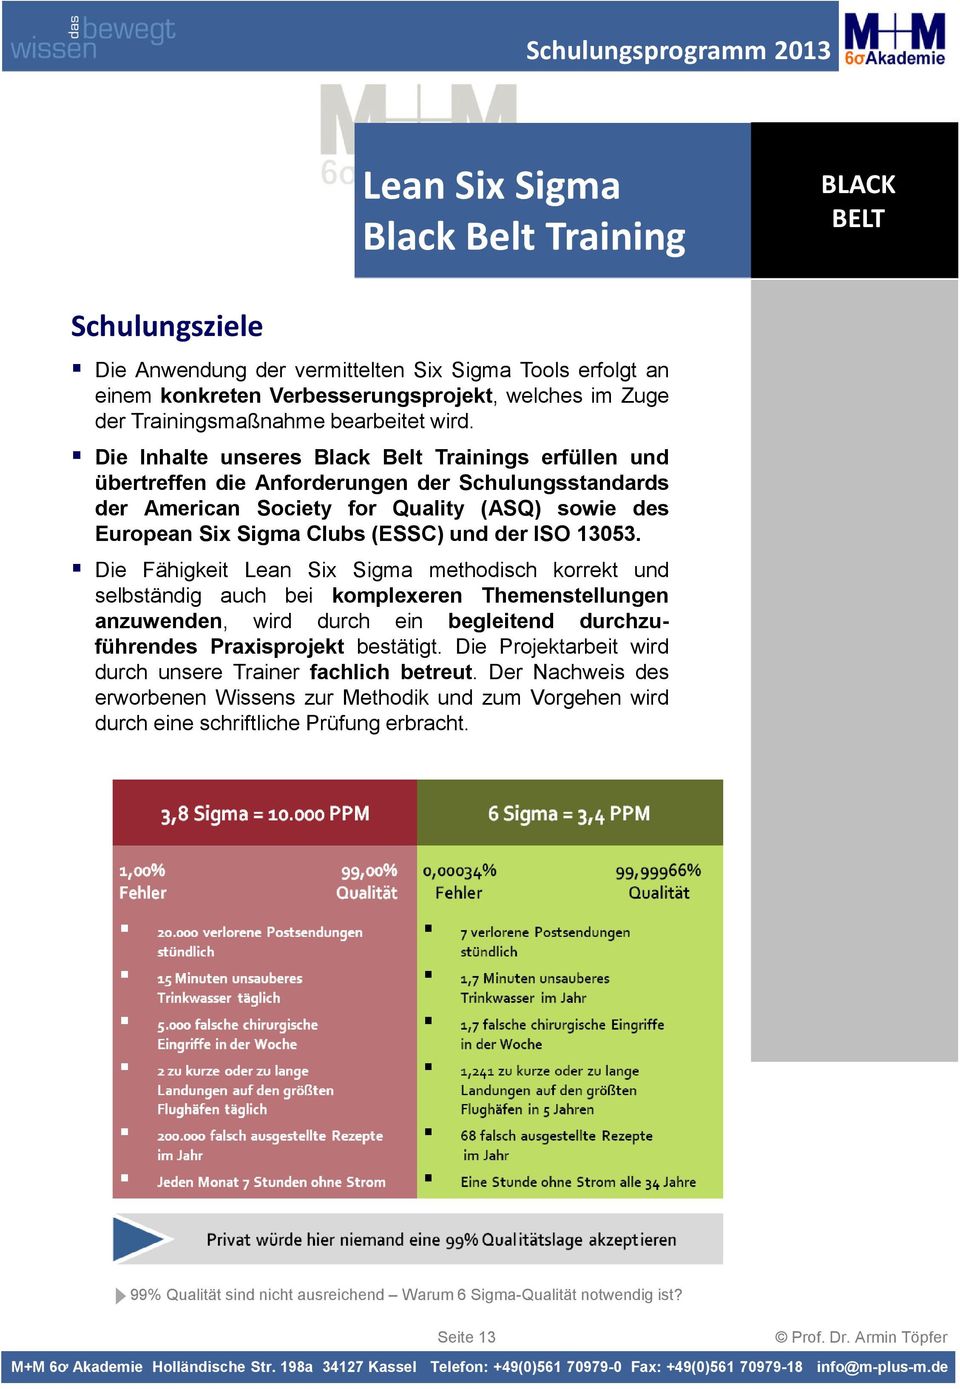 Die Inhalte unseres Black Belt Trainings erfüllen und übertreffen die Anforderungen der Schulungsstandards der American Society for Quality (ASQ) sowie des European Six Sigma Clubs(ESSC) und der ISO